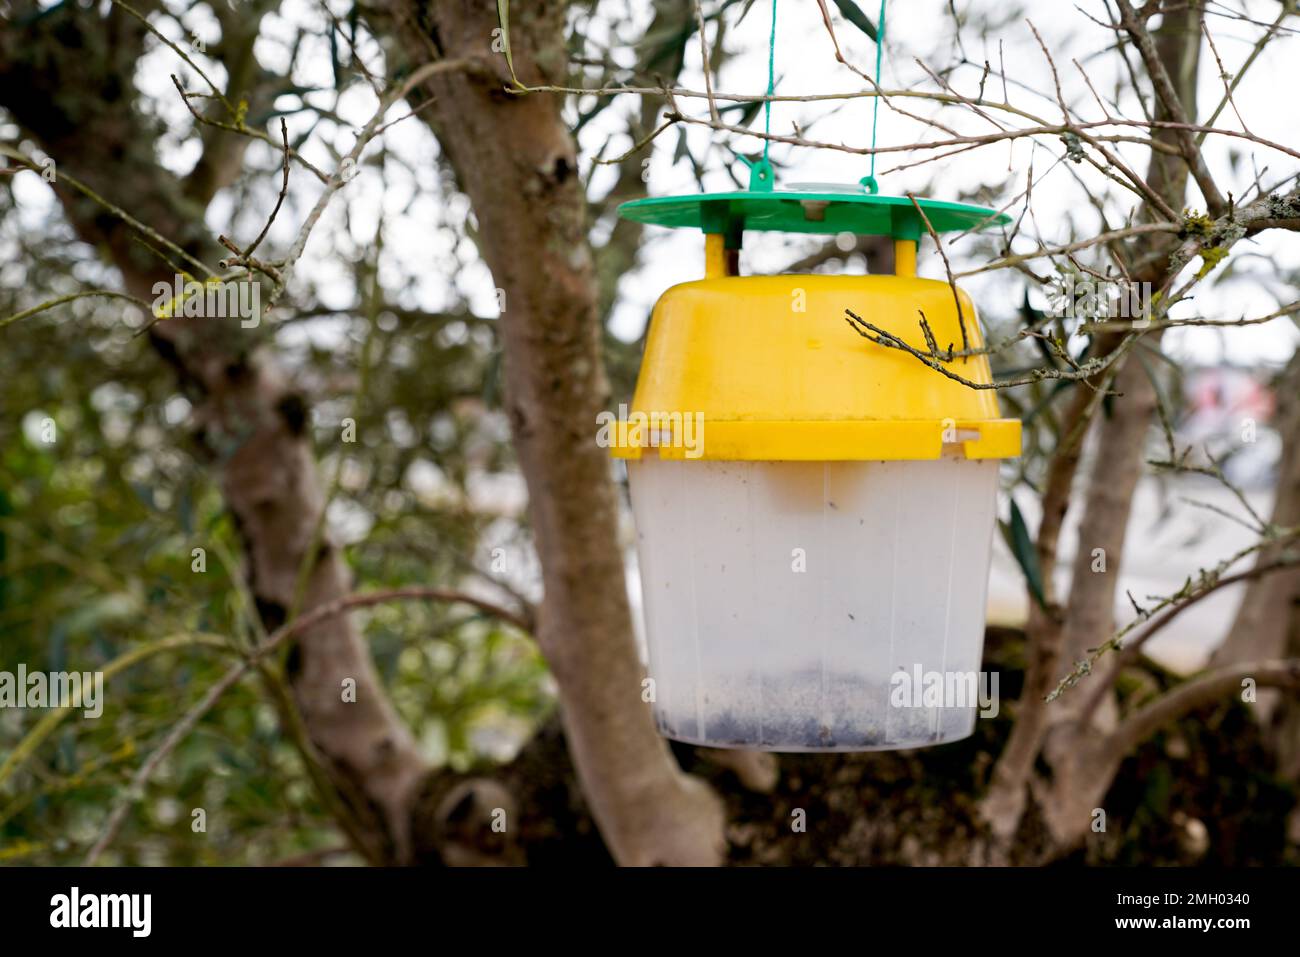 Plastikfalle für asiatische Hummeln in europa, um Insekteninvasion zu stoppen Stockfoto